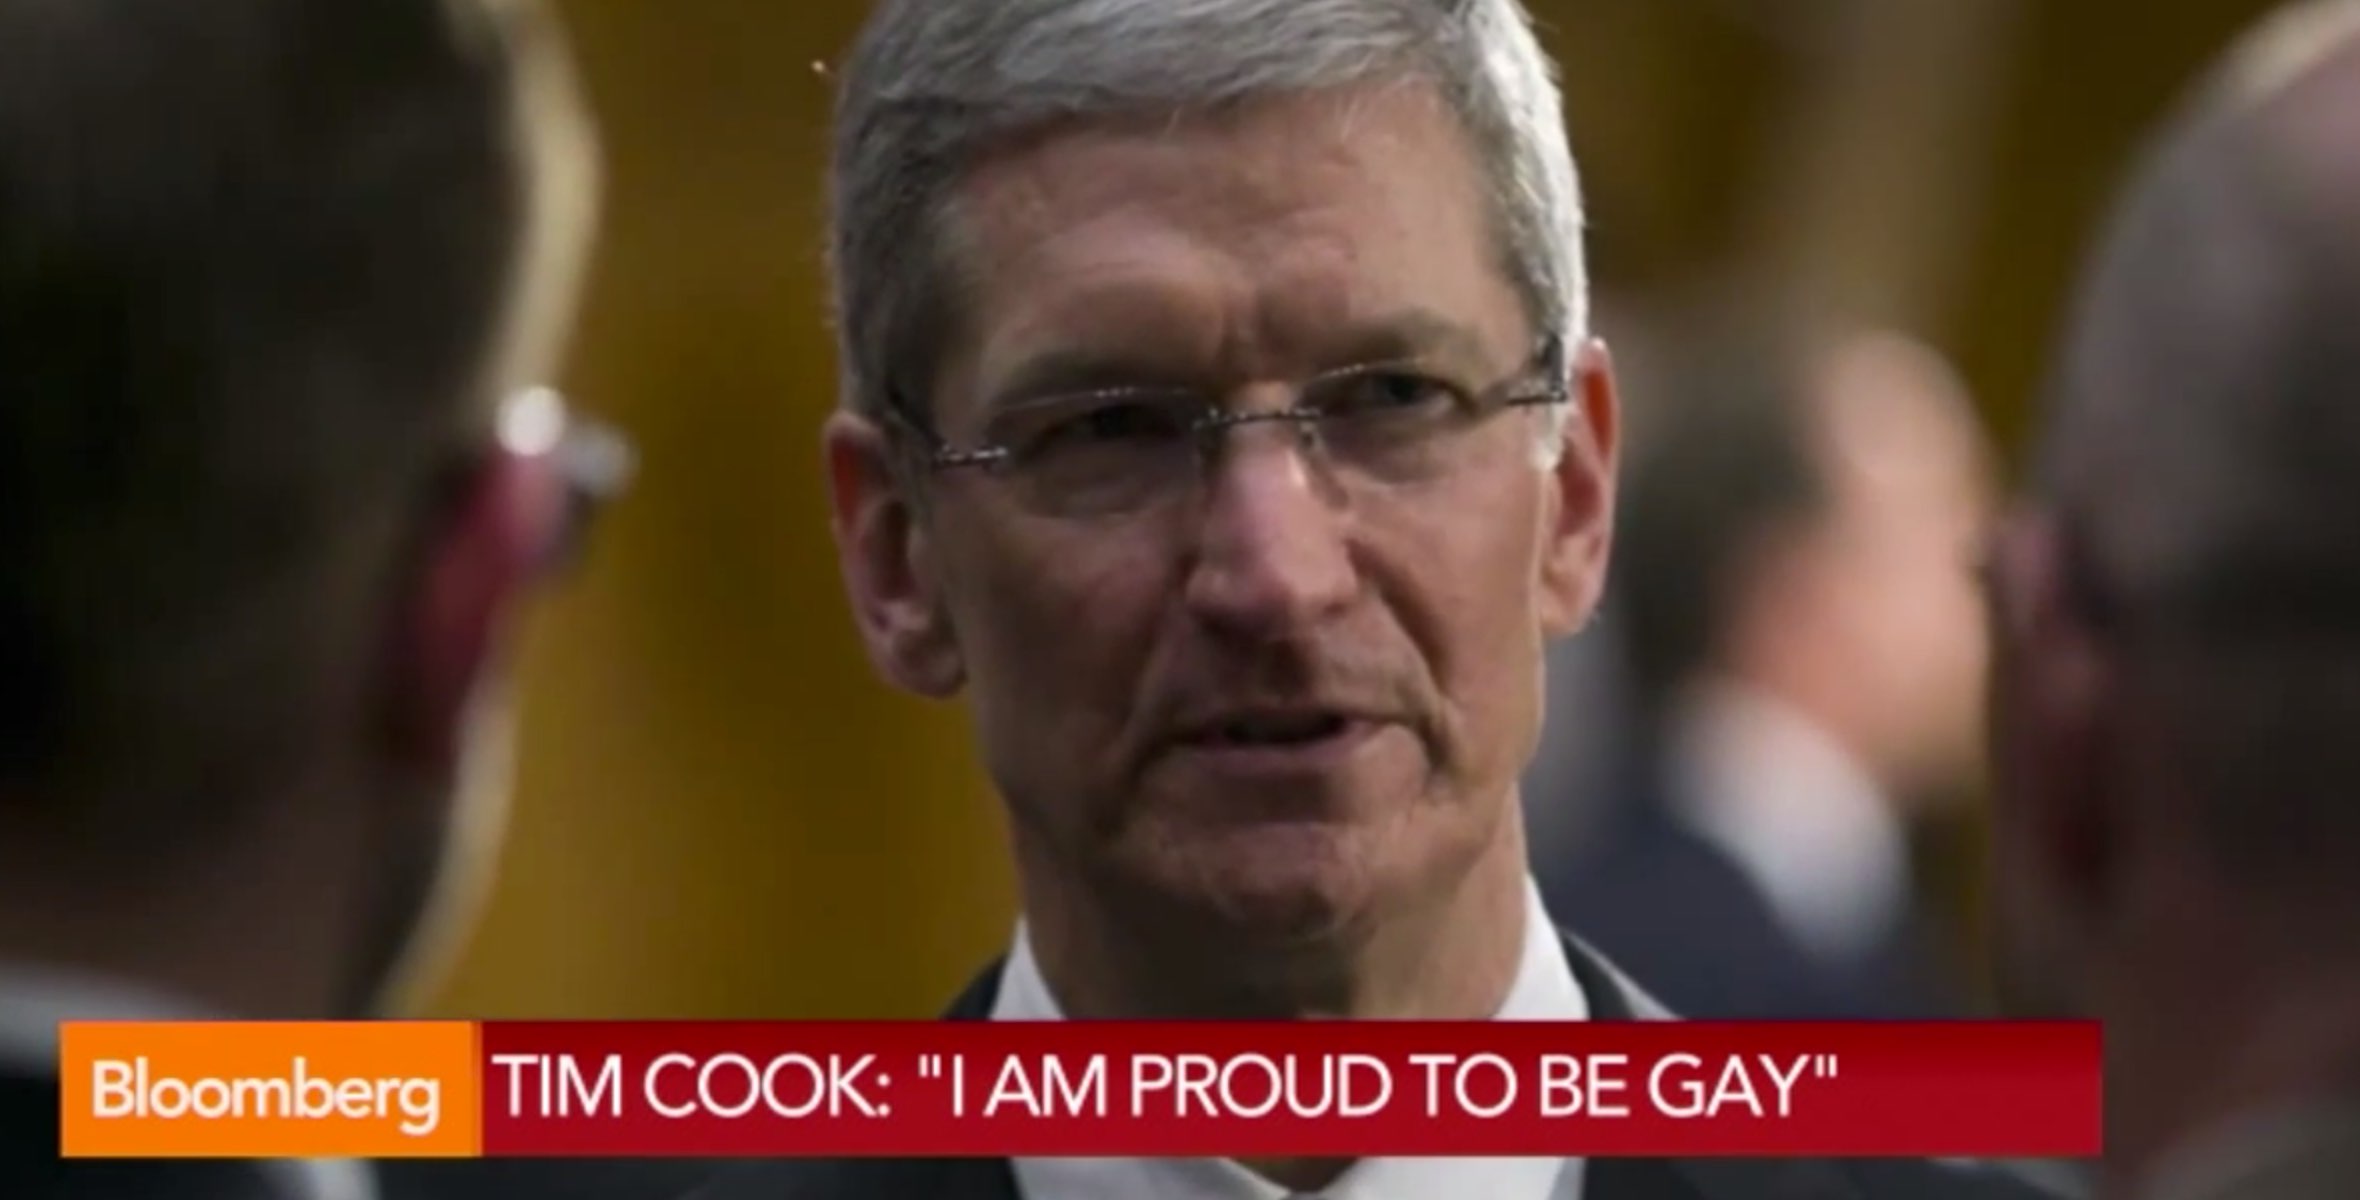 Offiziell: Apple CEO Tim Cook ist schwul - und stolz darauf! 1